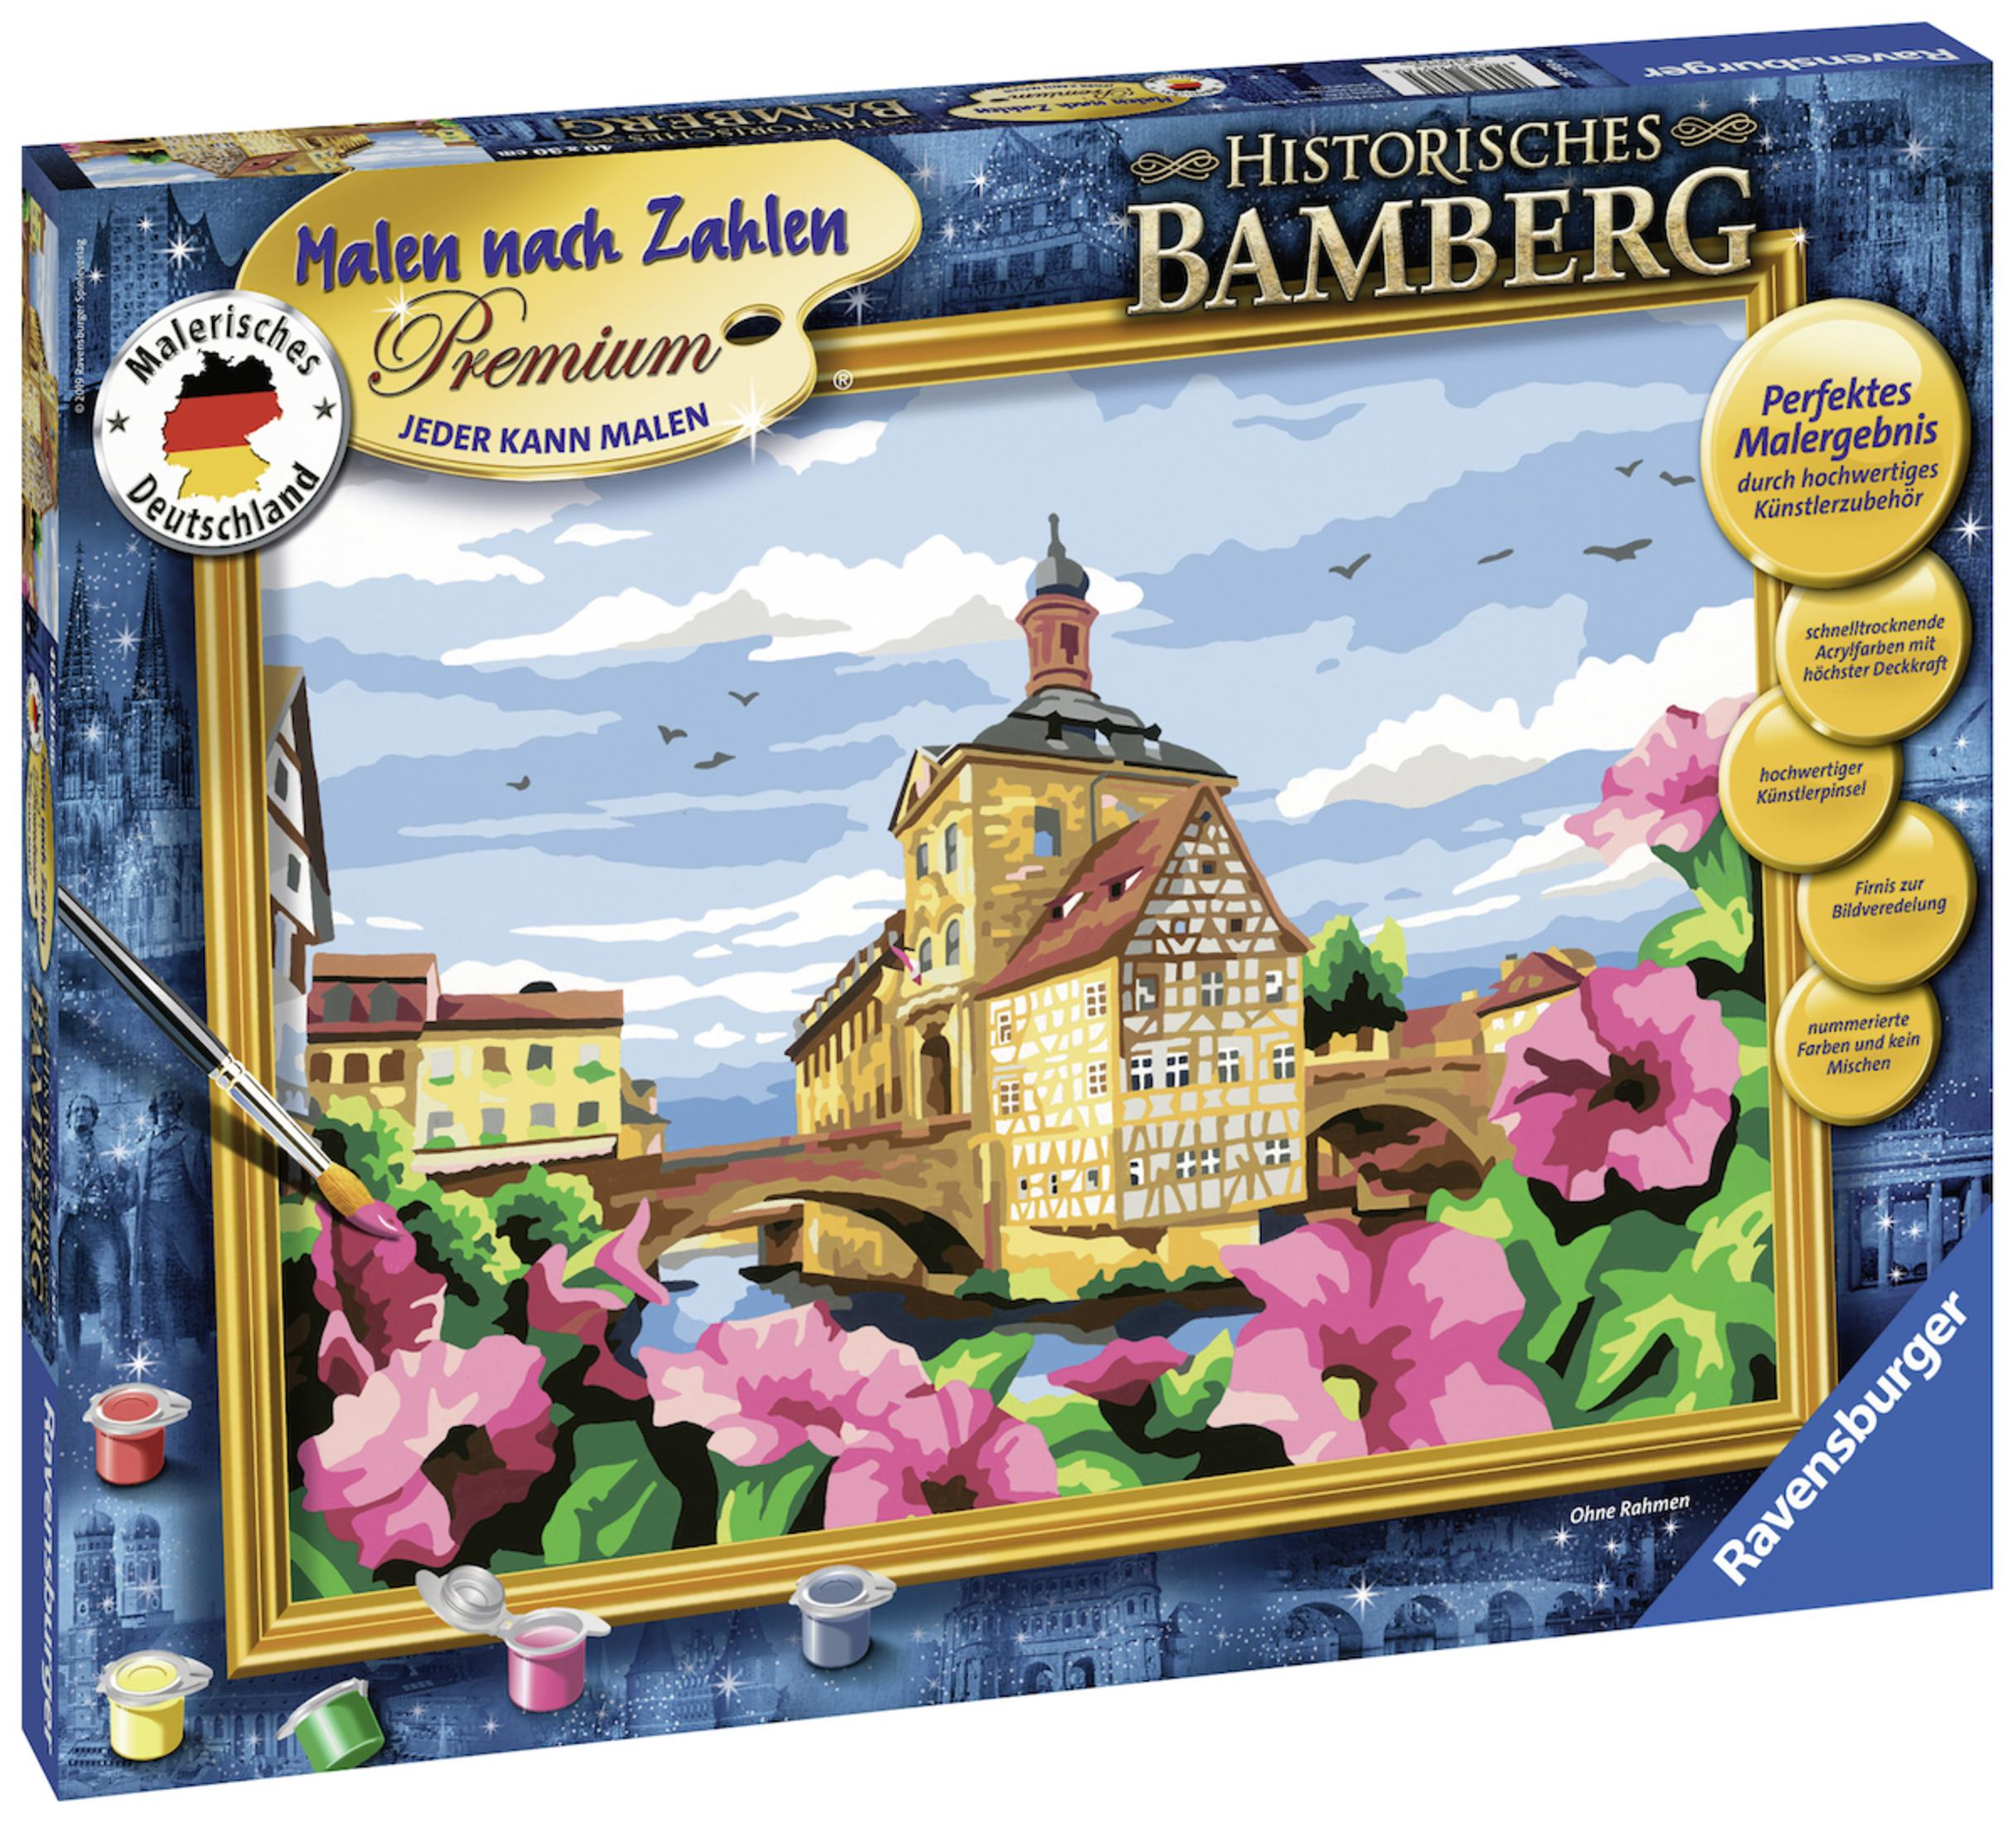 RAVENSBURGER 28913 HISTORISCHES BAMBERG Serie MnZ Mehrfarbig Premium